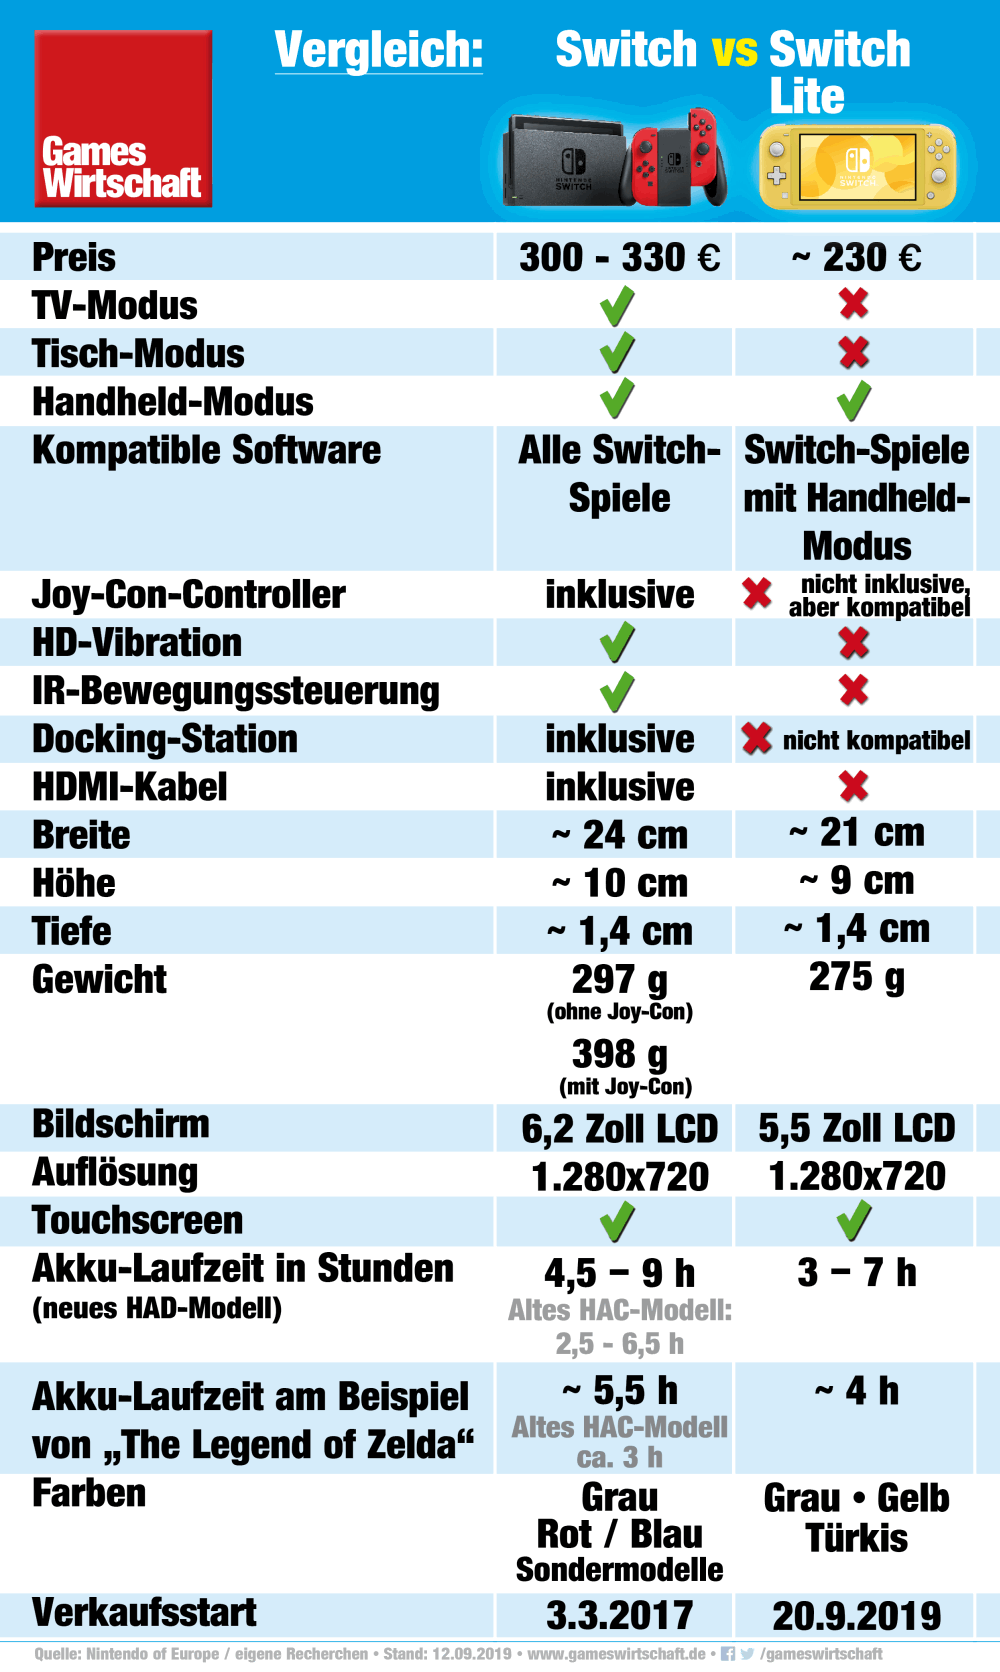 Die wichtigsten Unterschiede zwischen Nintendo Switch und Nintendo Switch Lite (Stand: 12.09.2019)